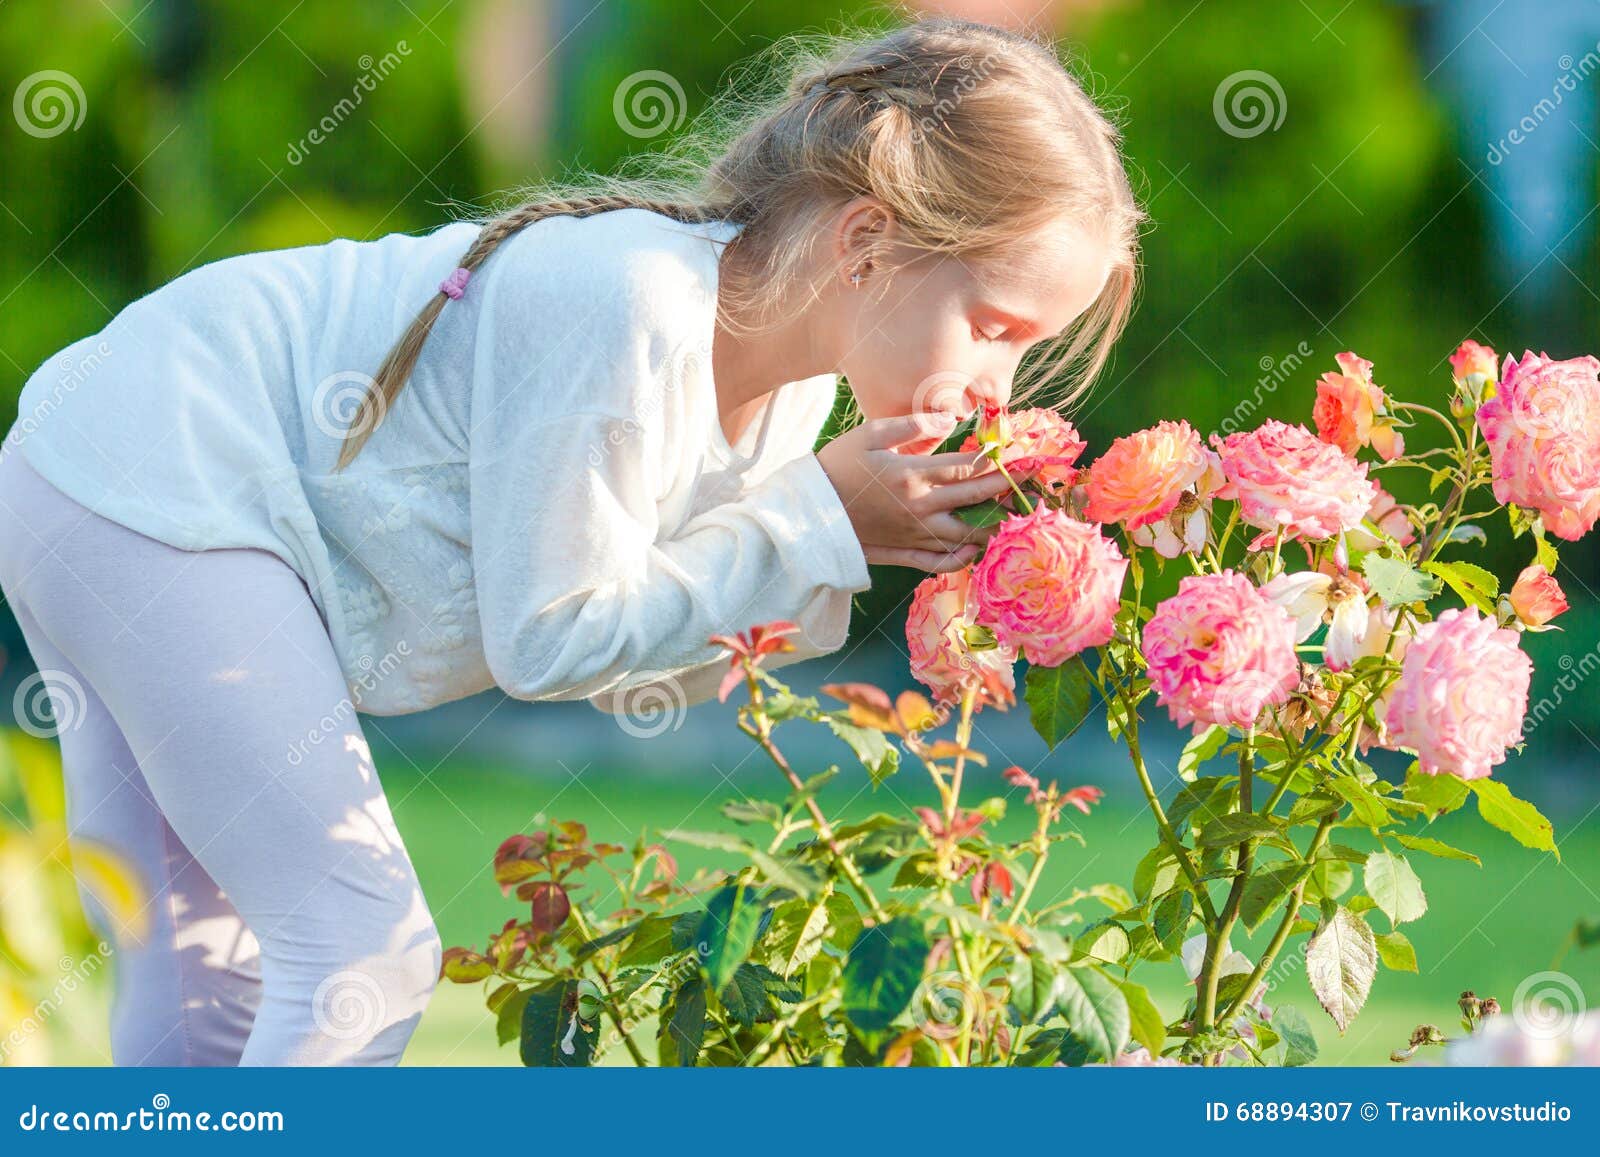 Воздух благоухание. Девушка нюхает цветы в саду. Девочка нюхает цветок. Девочка нюхает цветочек. Девушка нюхает цветы в полный рост.